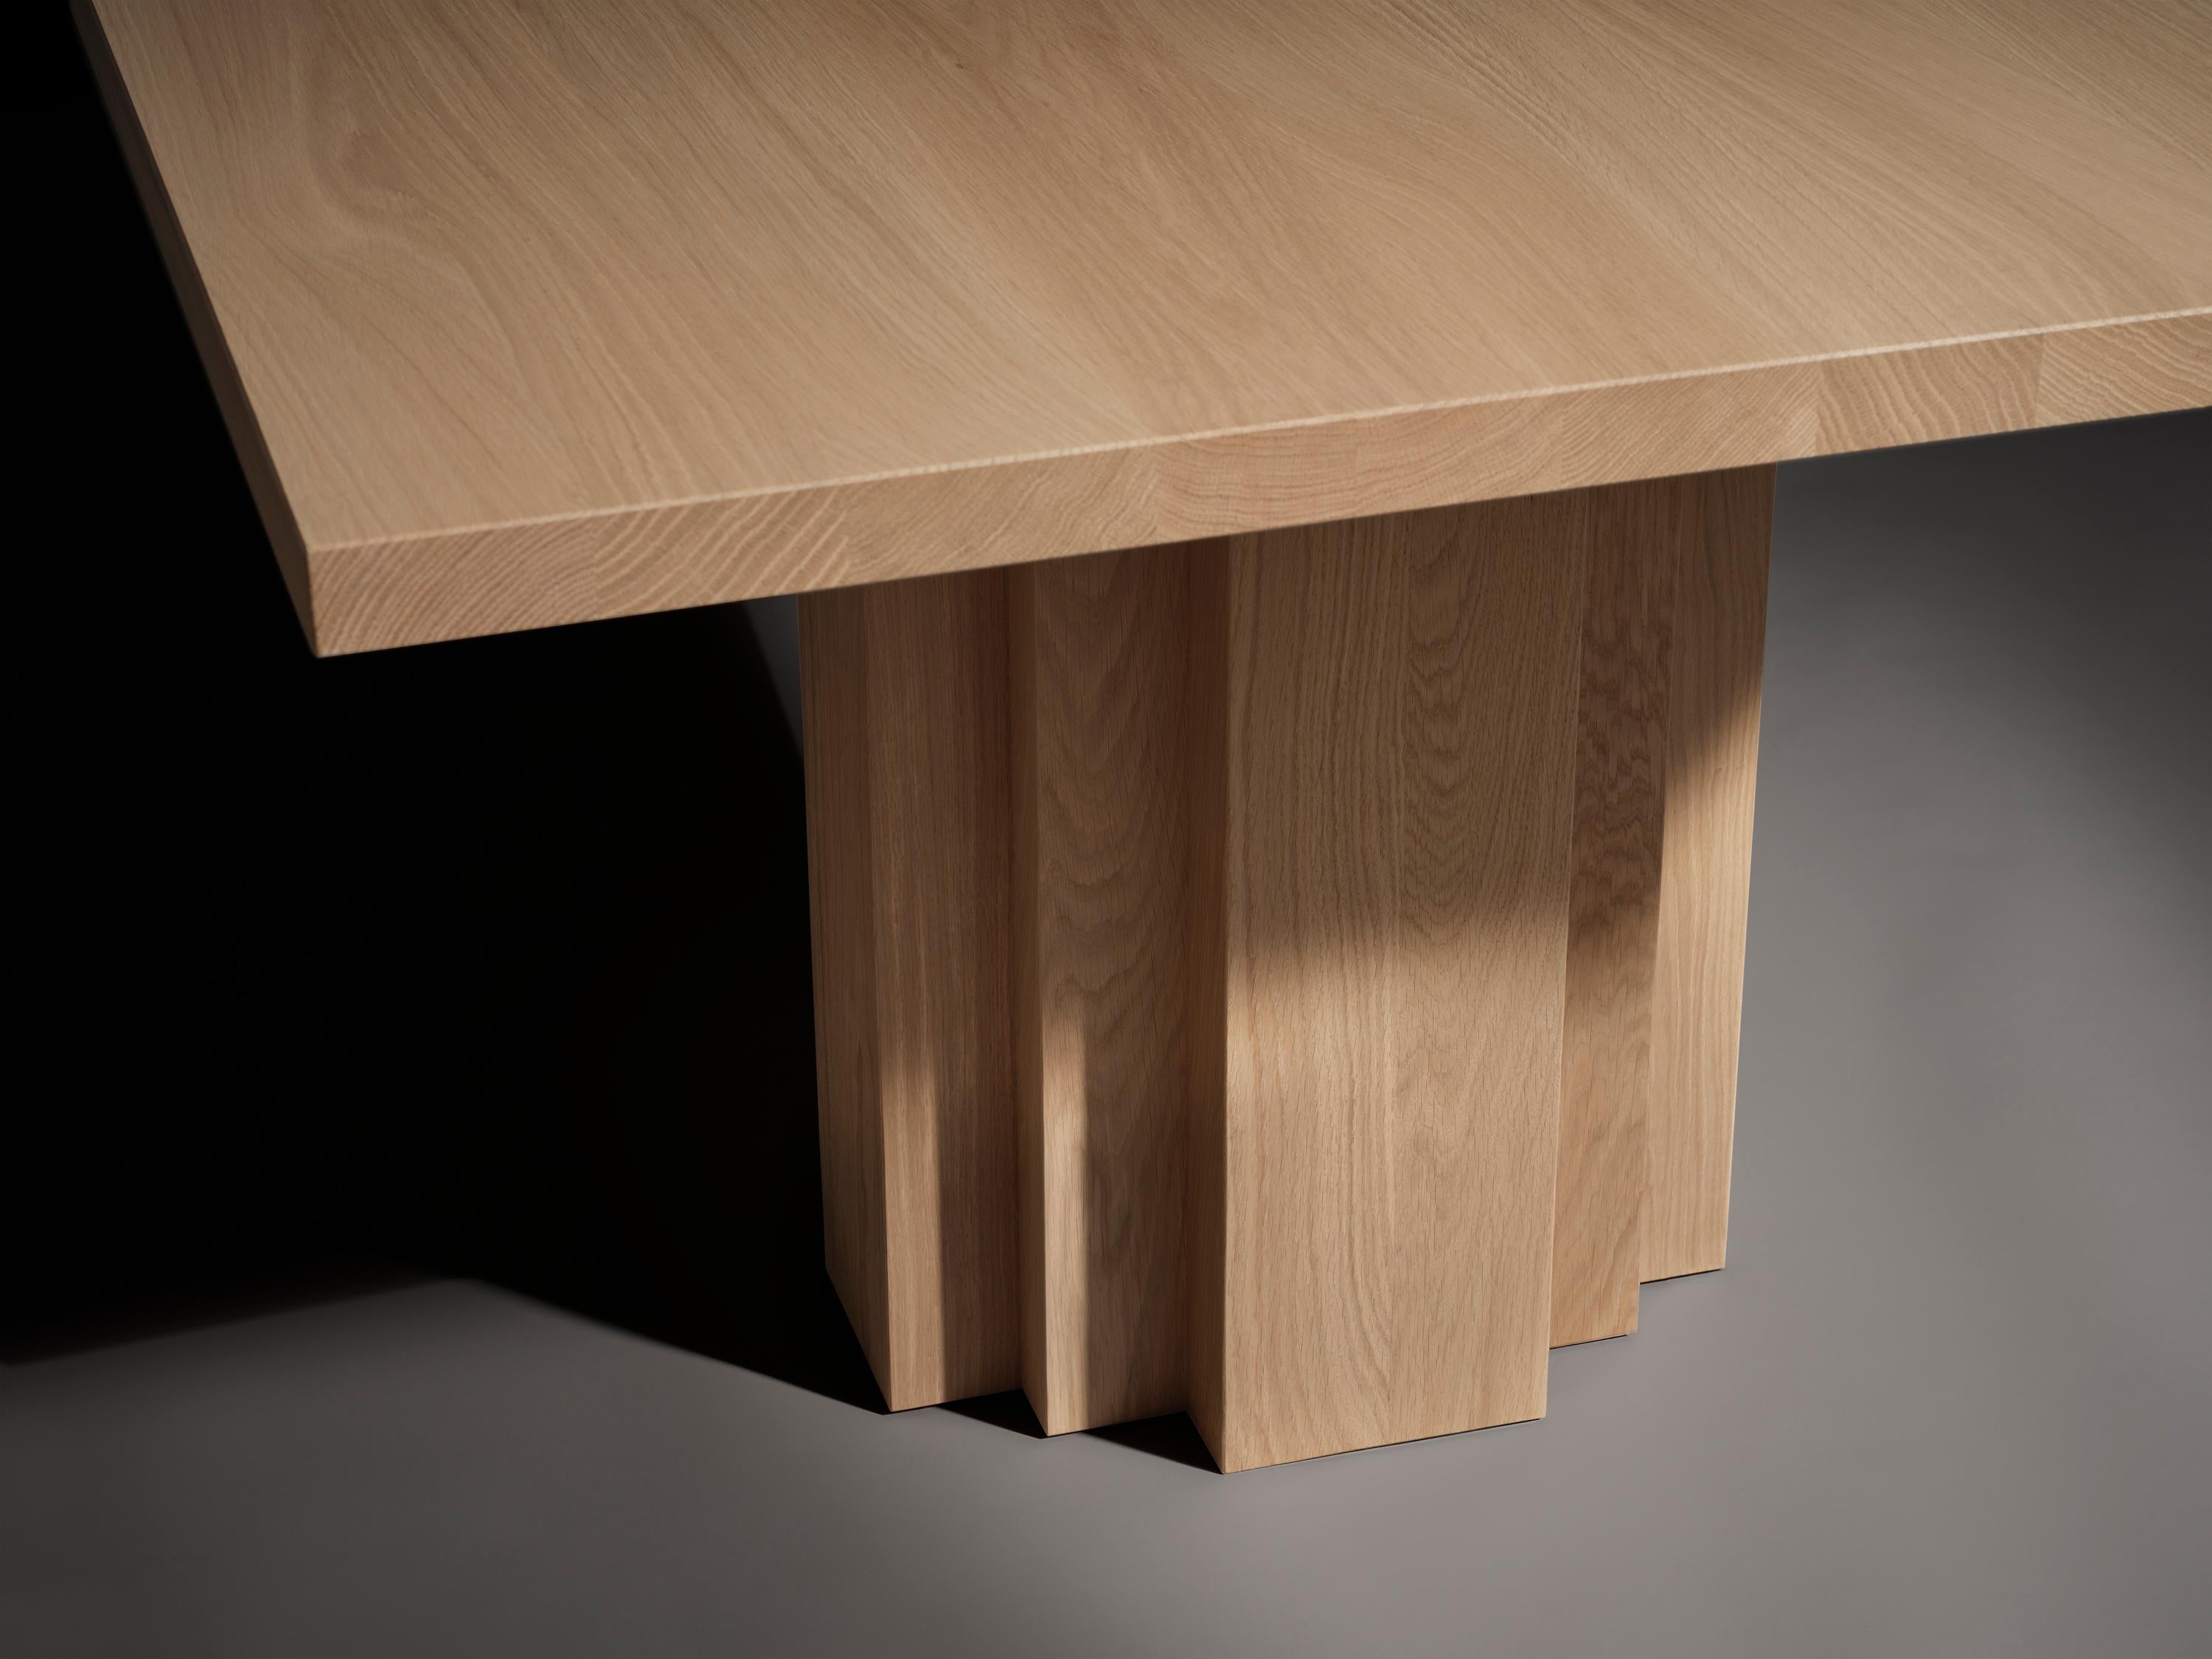 La table Brut Slim s'inspire du brutalisme et de l'architecture de l'école d'Amsterdam. Conçue par Aad Bos et fabriquée aux Pays-Bas. La table Brut Slim est la version la plus fine de la table Brut.

Mokko est un studio de design basé à Amsterdam